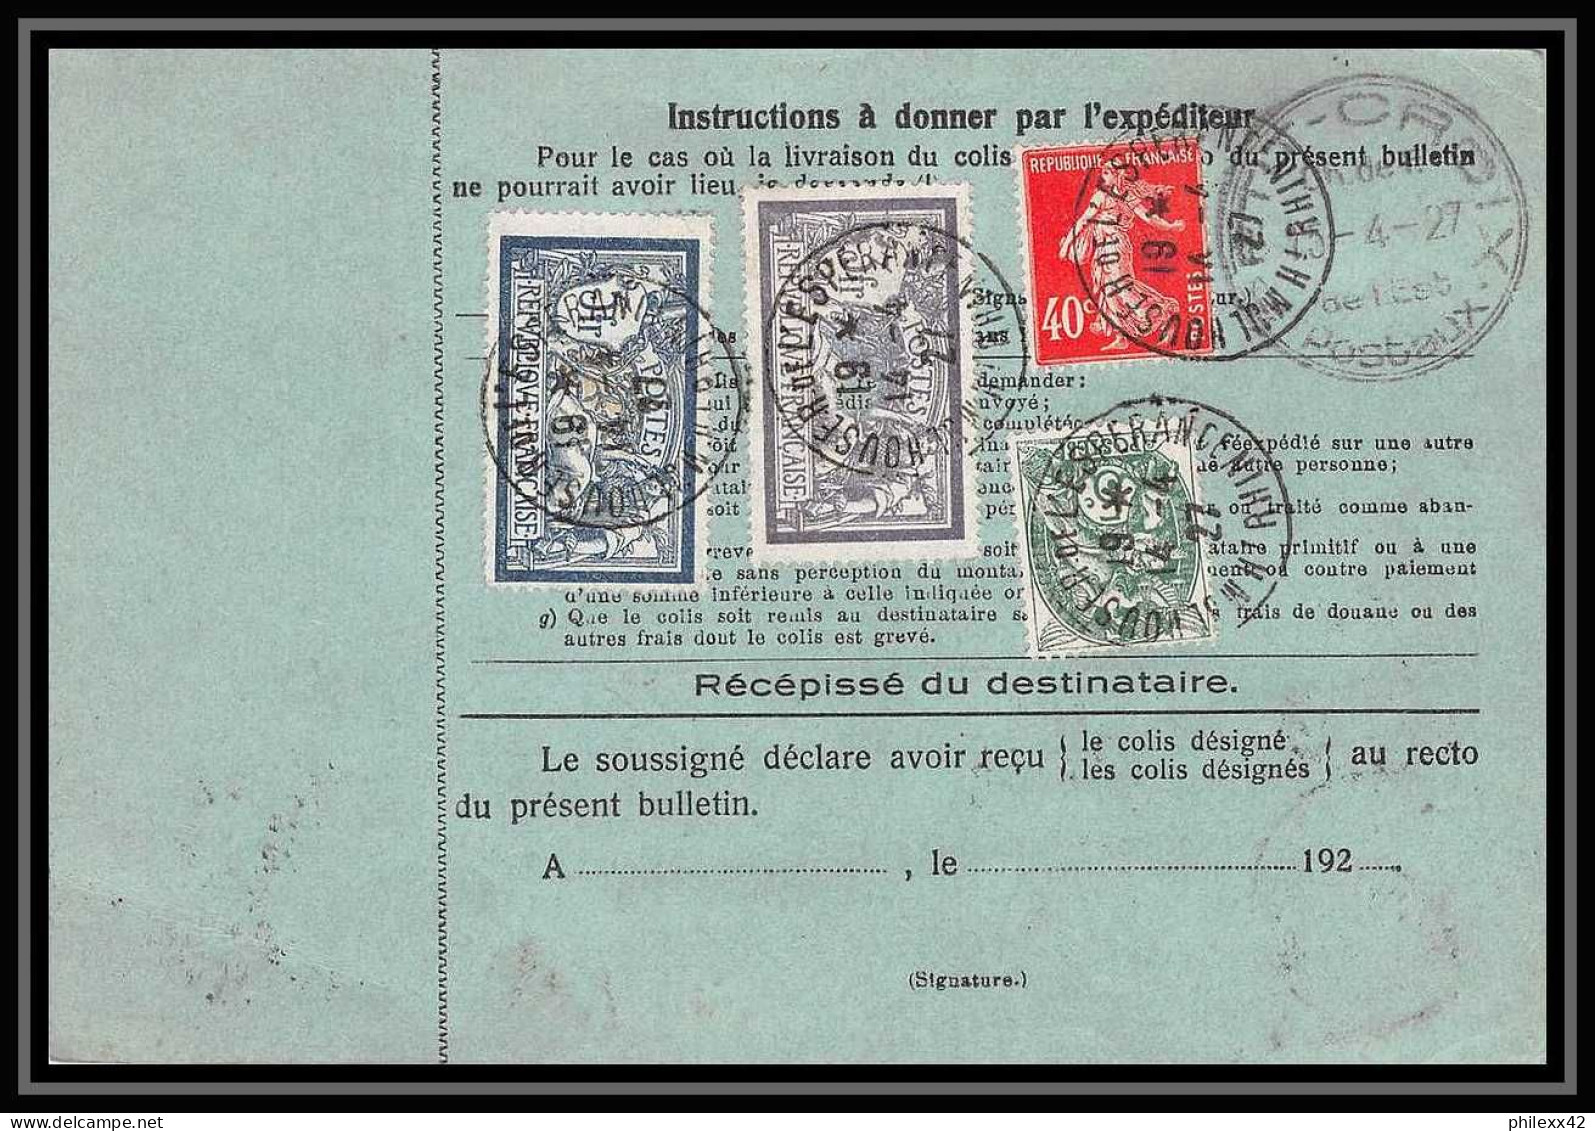 25023 Bulletin D'expédition France Colis Postaux Fiscal Haut Rhin - 1927 Mulhouse Merson 123+145 GARE - Storia Postale